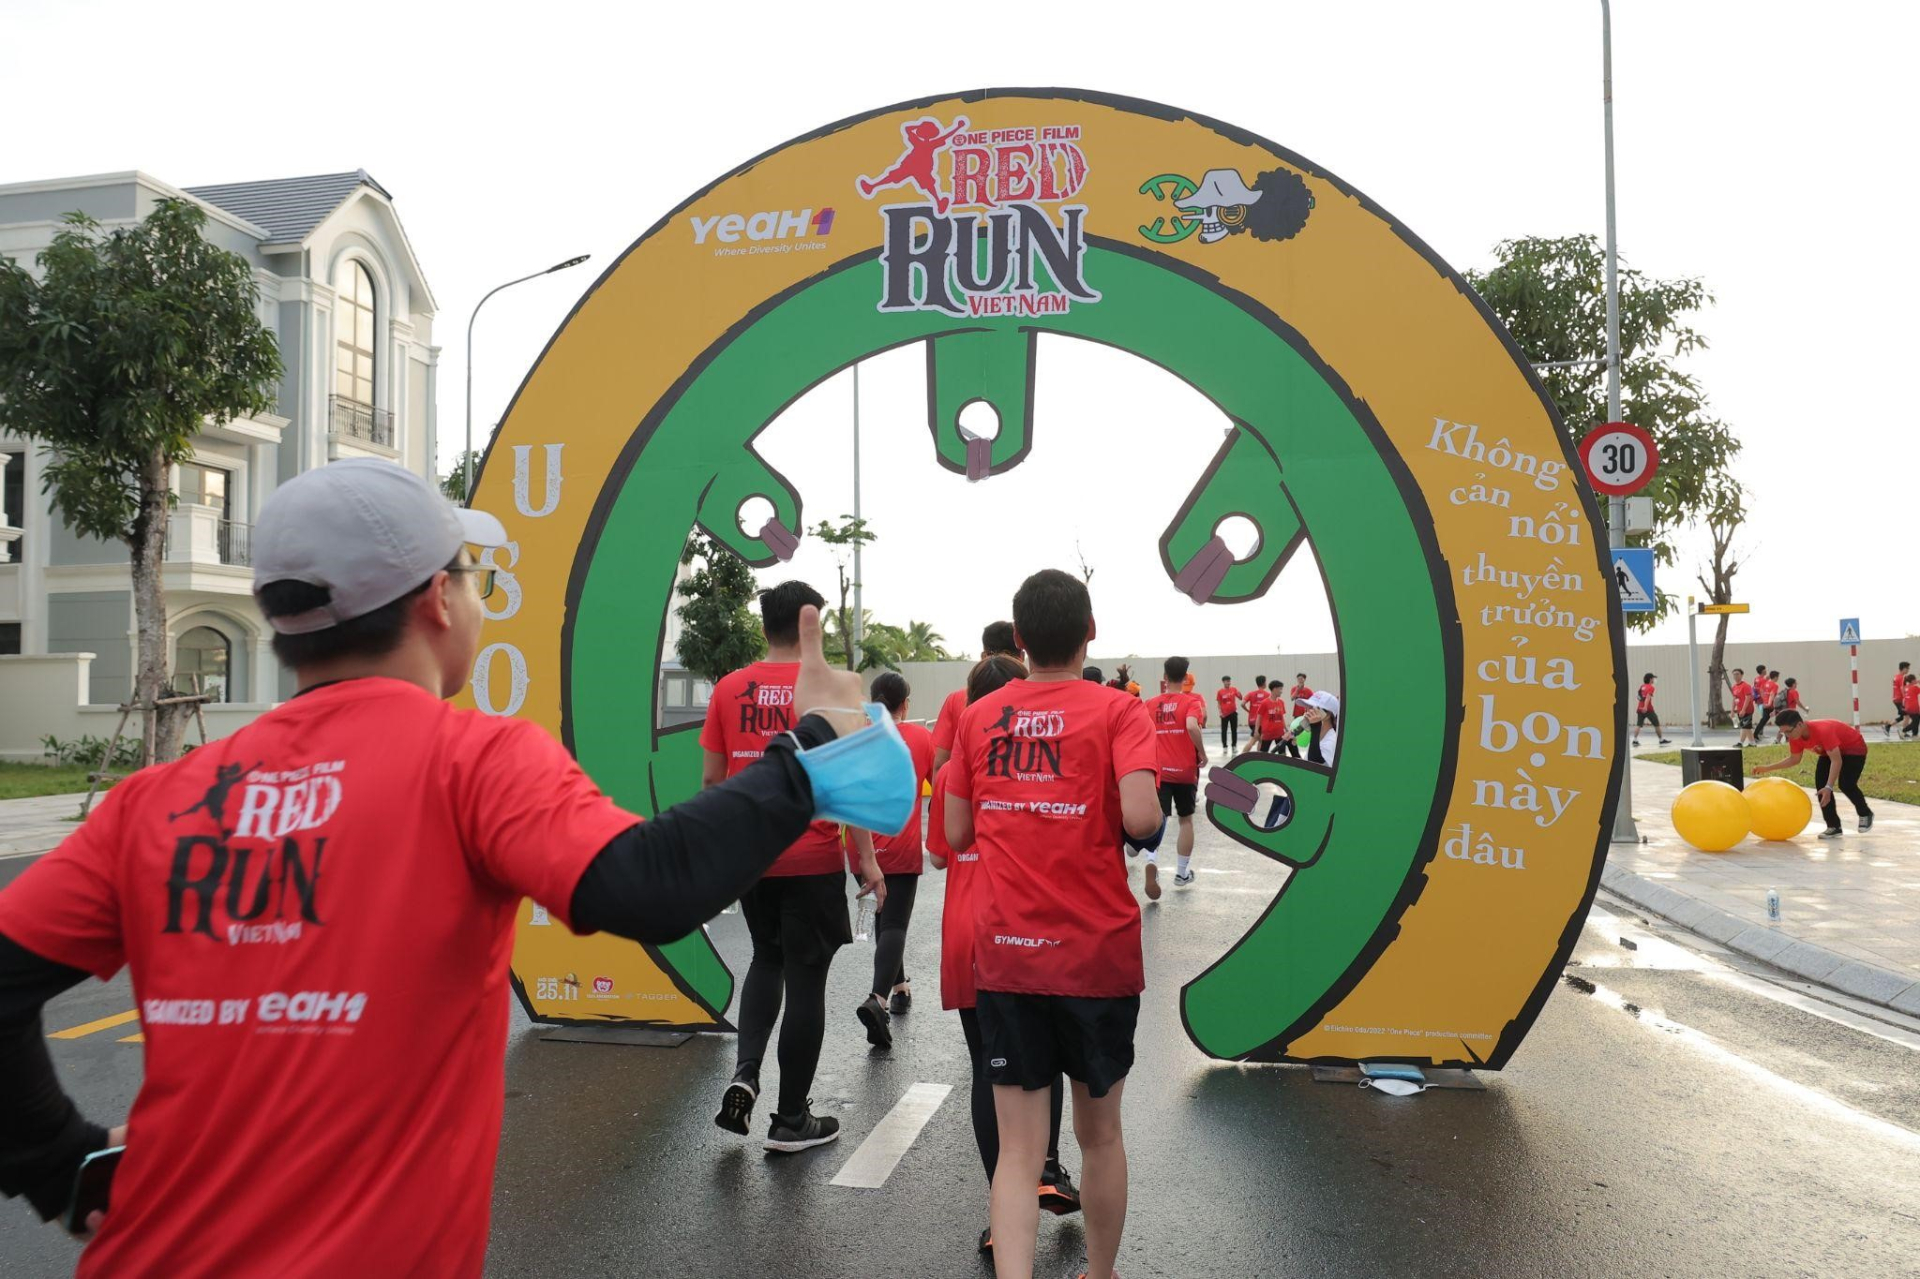 5.000 vận động viên sức khỏe vững vàng sẵn sàng chinh phục đường chạy One Piece Film Red Run - ảnh 9